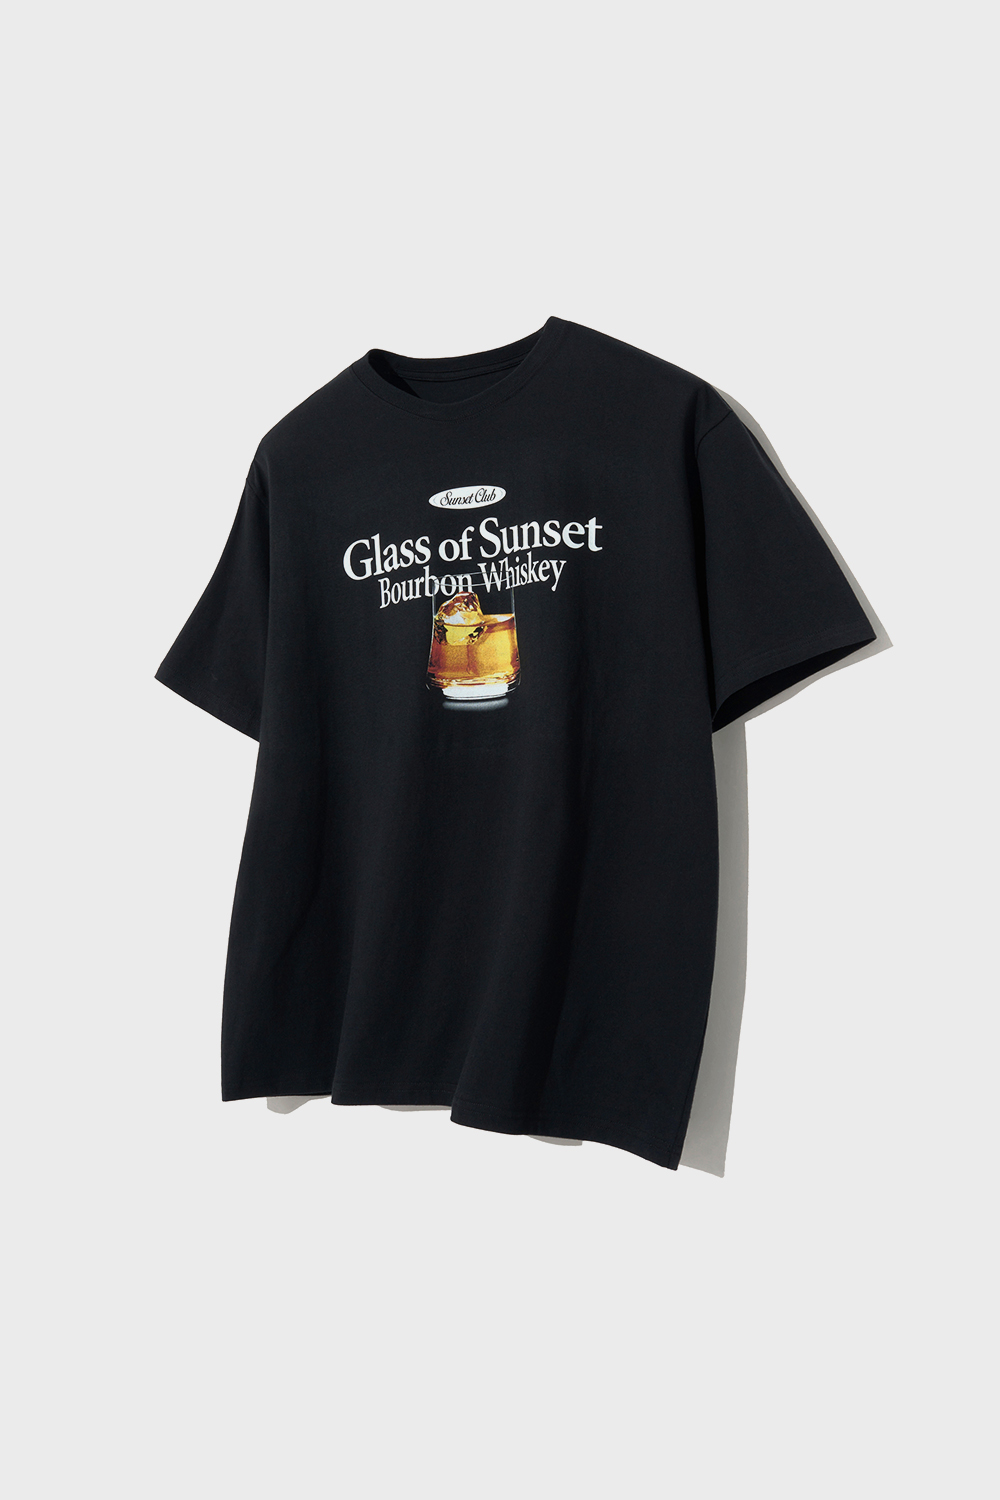 Glass of Sunset T-Shirts (Black)